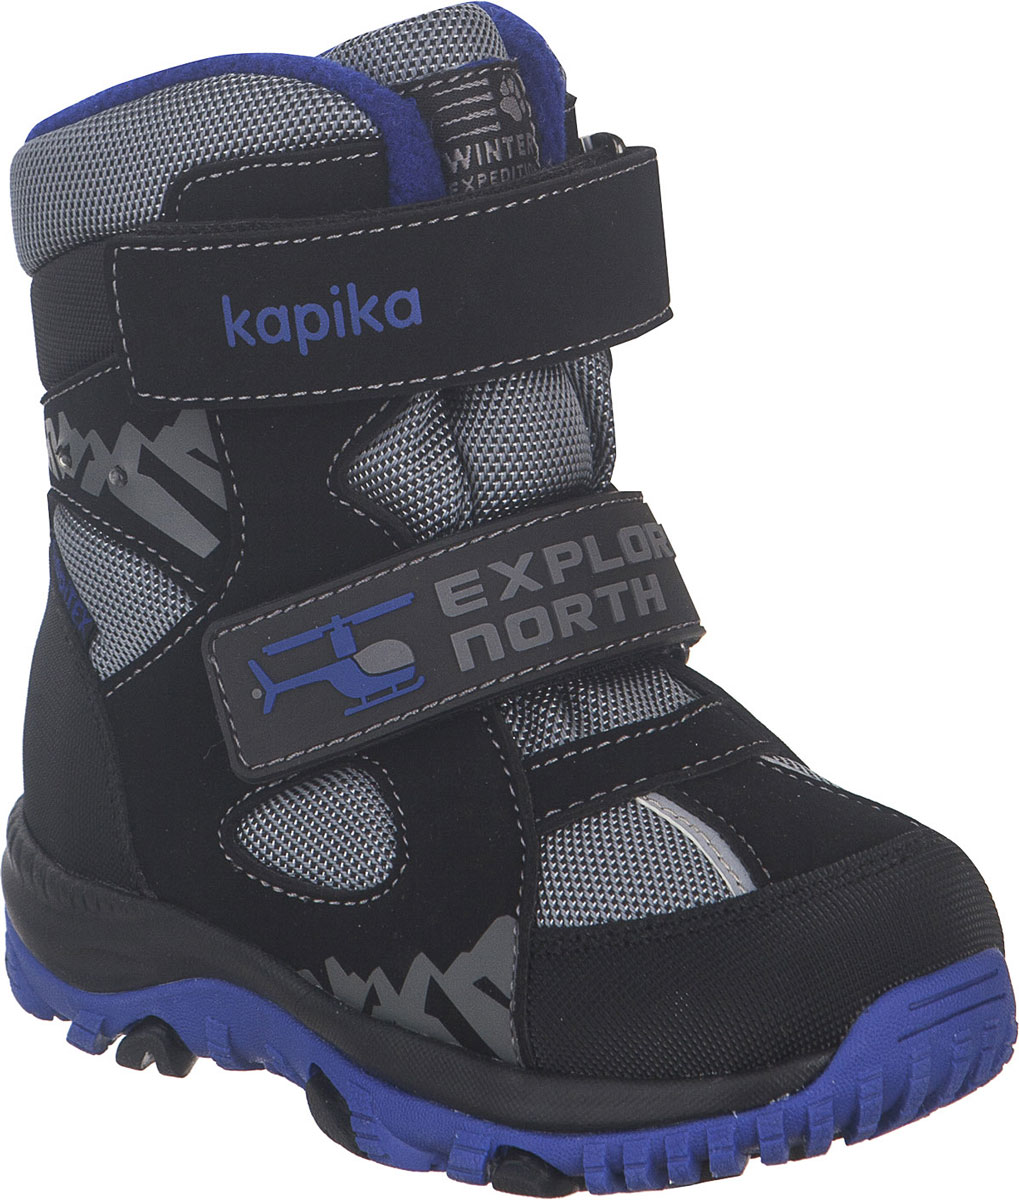 Ботинки для мальчика Kapika, цвет: черный, серый, синий. 41229-2. Размер 25